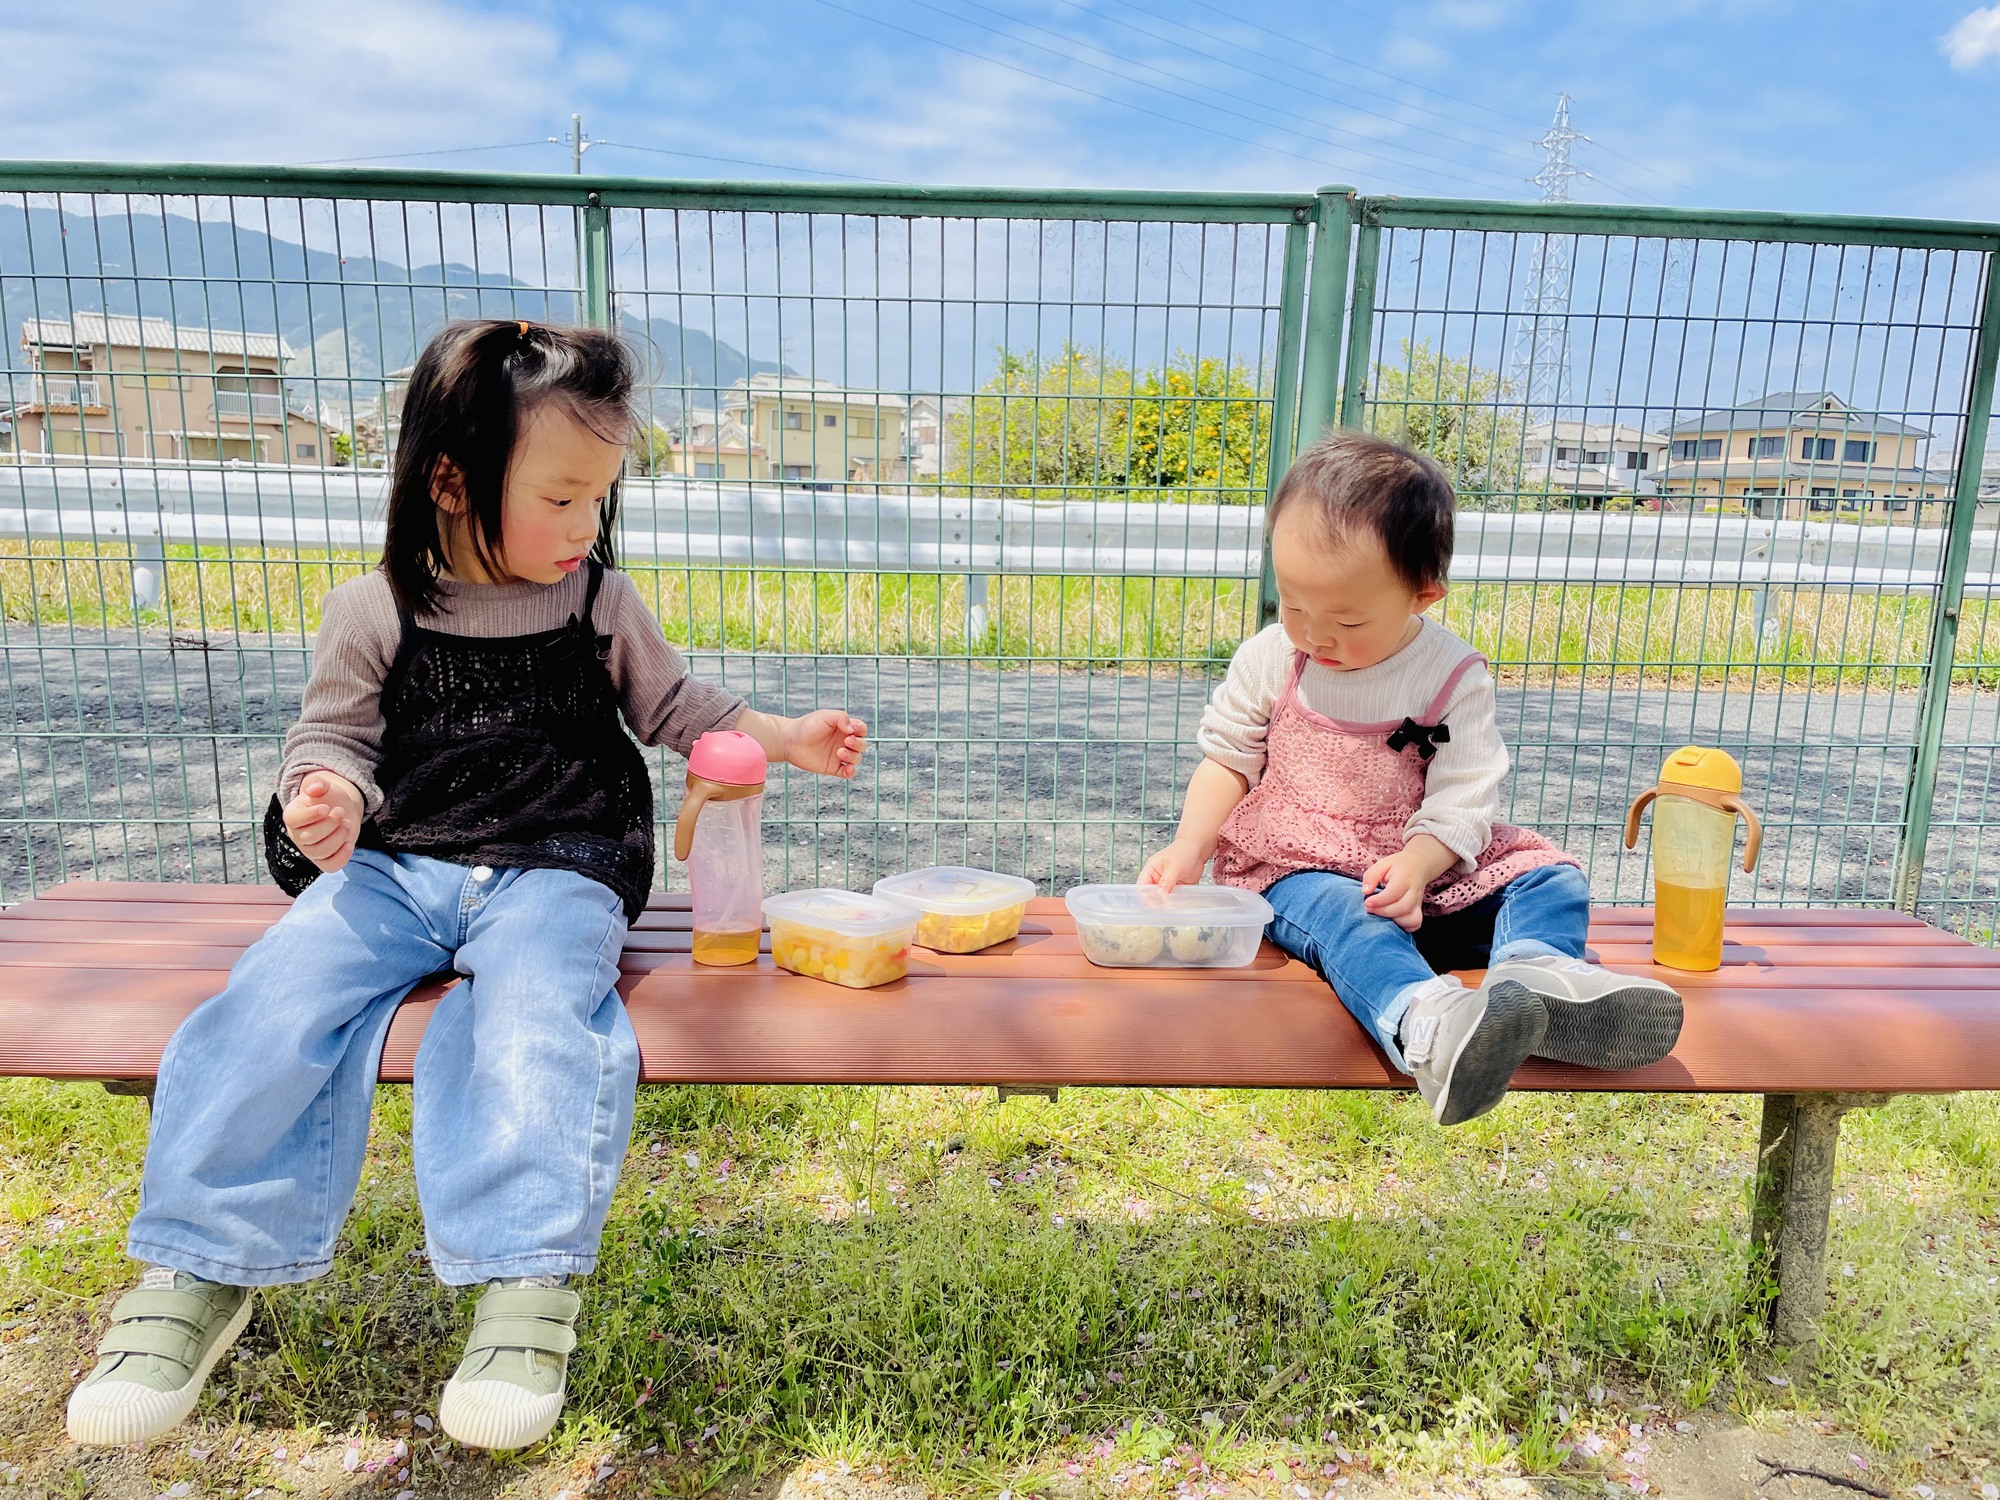 Mẹ Việt ở Nhật chọn NƠI ĐẶC BIỆT để đưa con đi chơi hàng ngày: Nuôi dưỡng cho các con một tâm hồn đẹp, trải qua tuổi thơ đầy ý nghĩa - Ảnh 6.